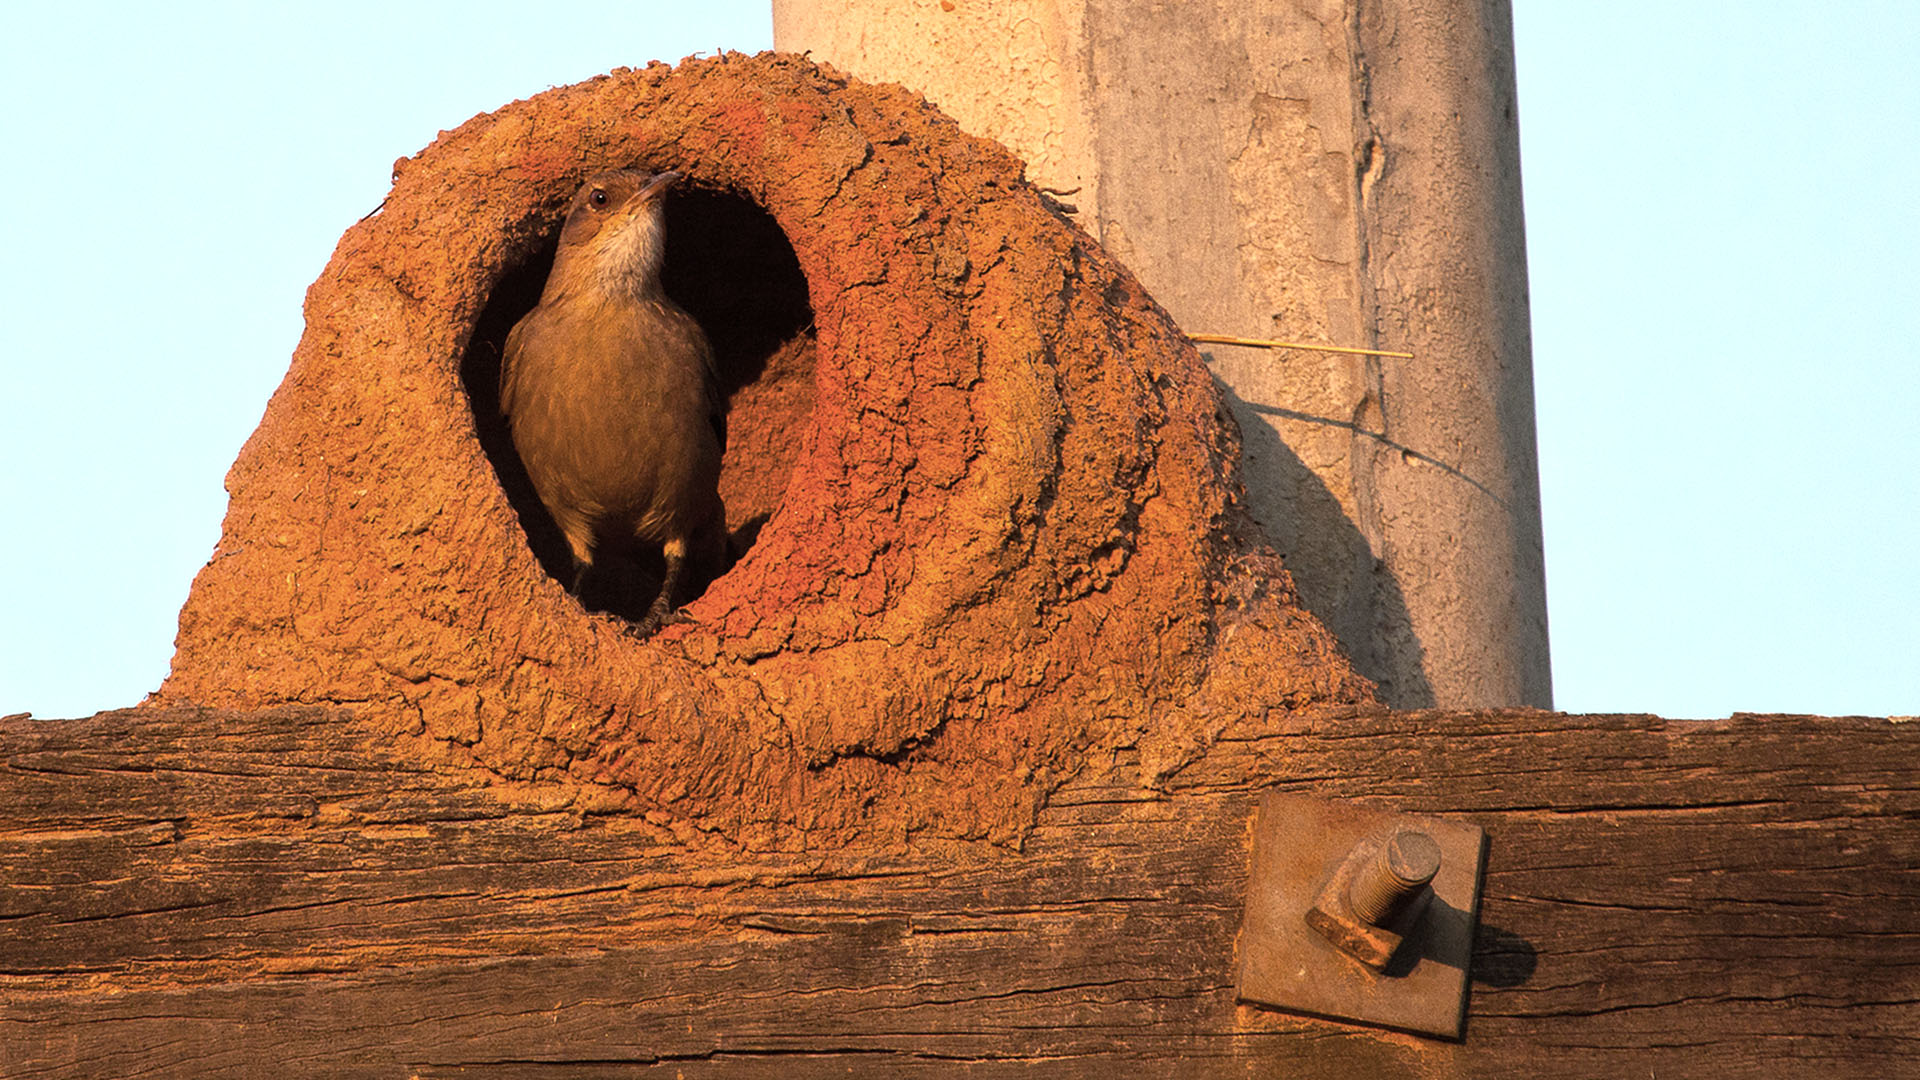 El hornero es conocido como un animal laborioso, debido al potente nido que construye usando su pico como única herramienta (Getty)